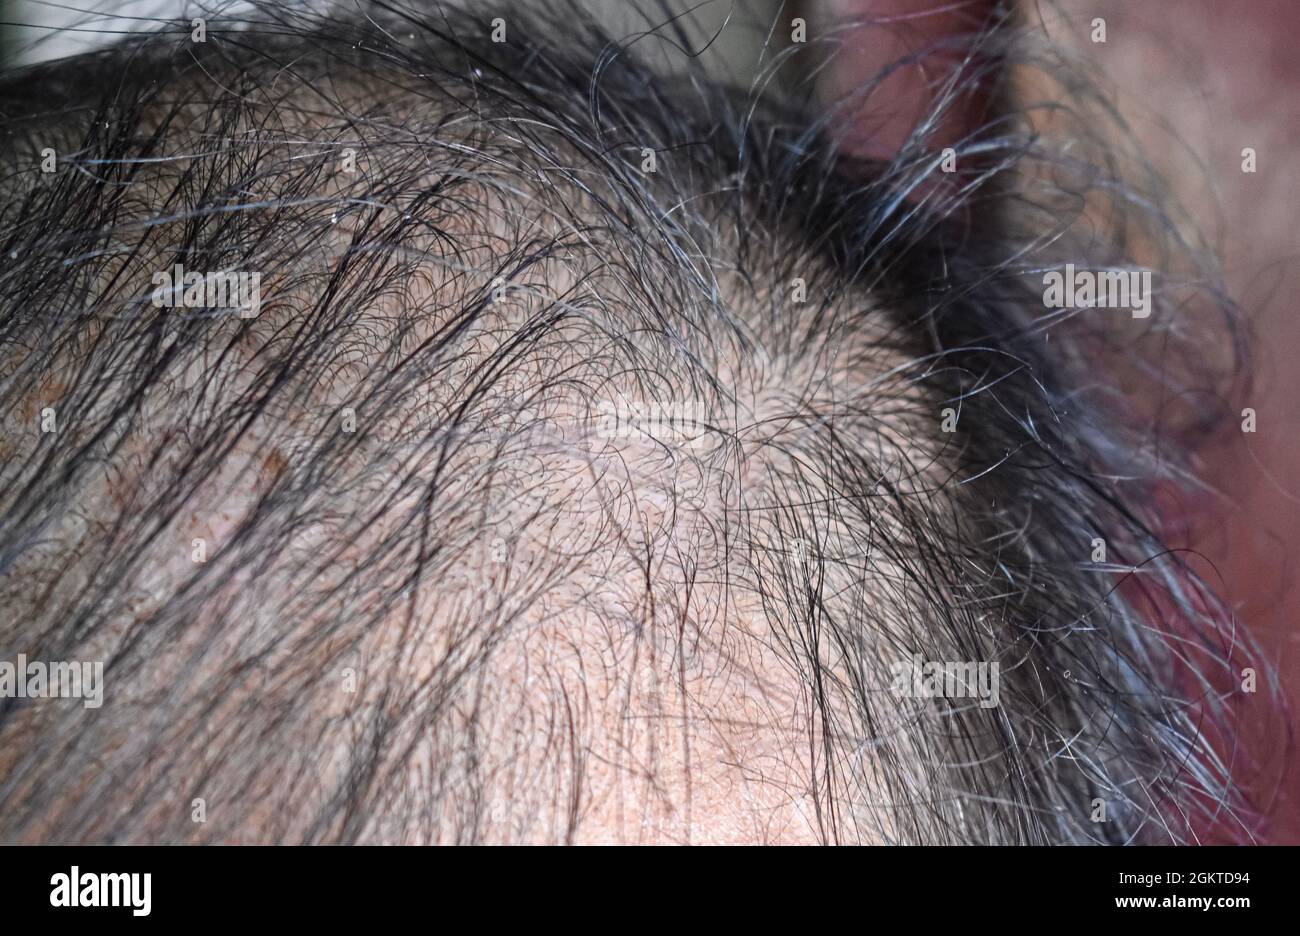 Dünner werdendes oder spärliches Haar, Haarausfall nach männlichem Muster im südostasiatischen, chinesischen älteren Mann. Stockfoto